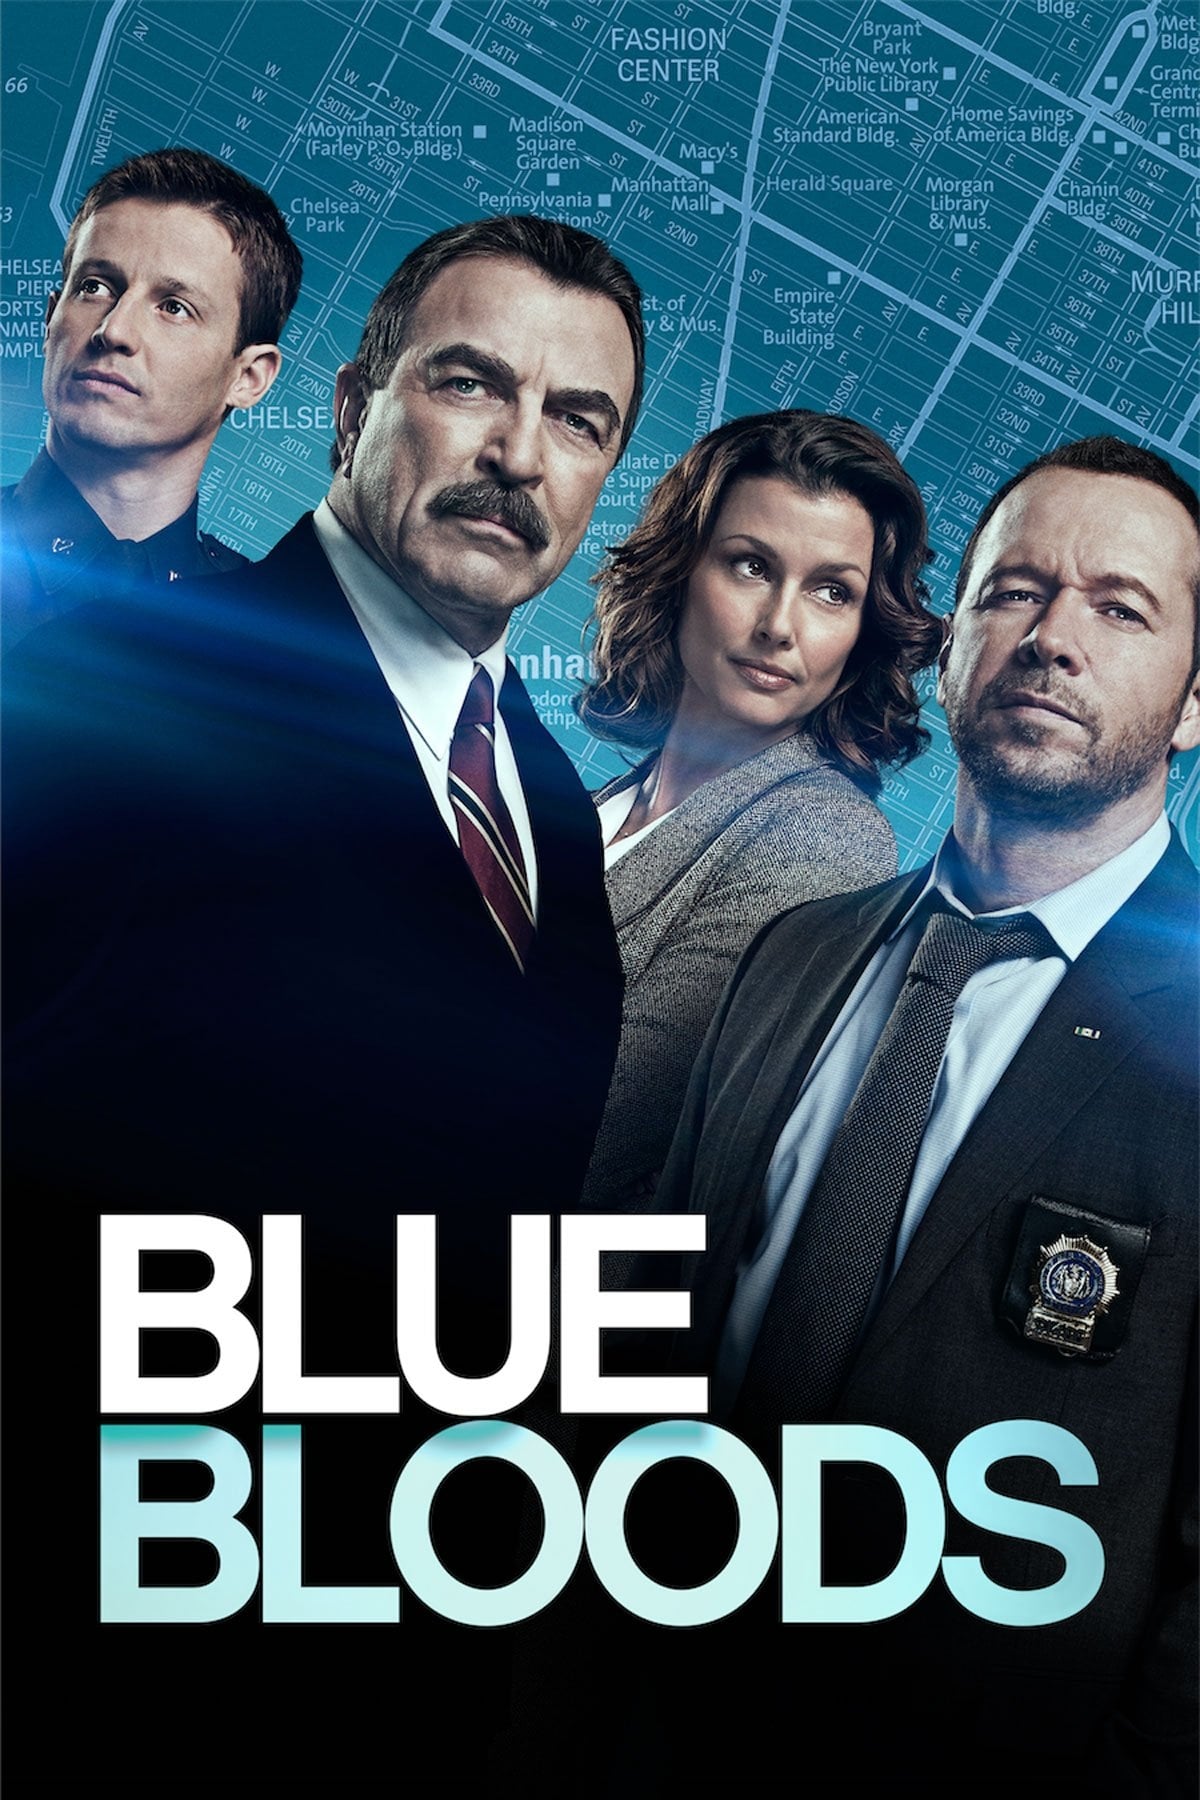 Blue bloods 7 temporada dublado